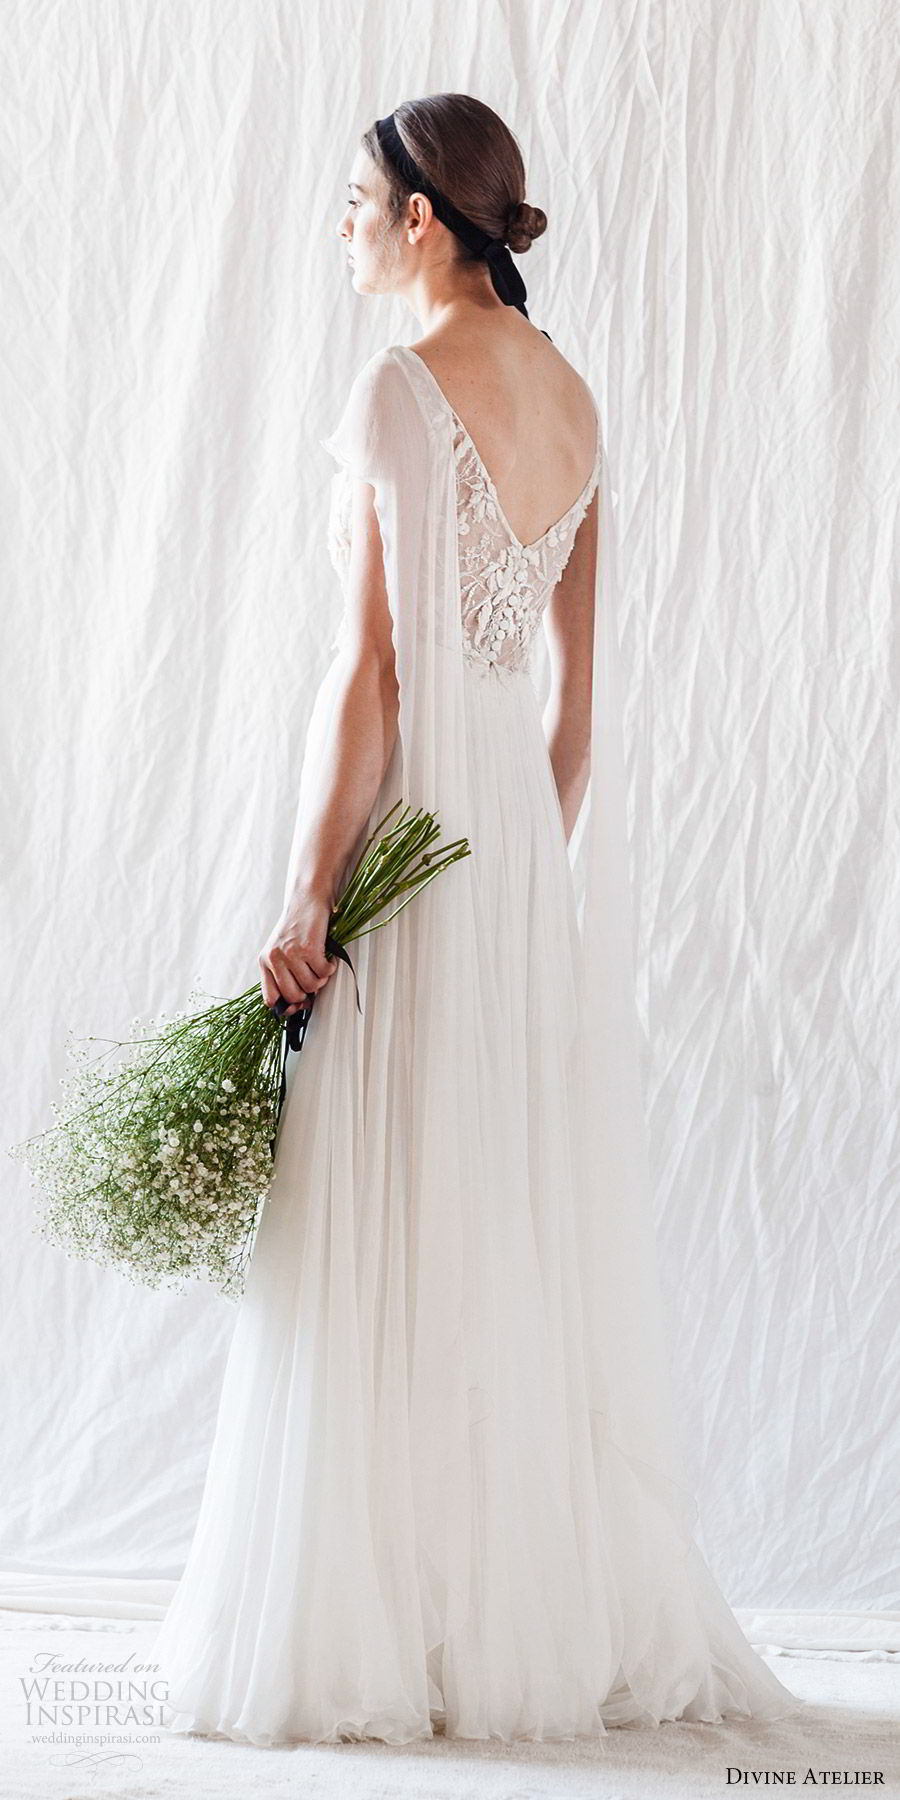 divine atelier 2019 bridal flutter sleeves bateau neckline embellished sheer bodice soft a line wedding dress (3) vback sweep train romantic bv